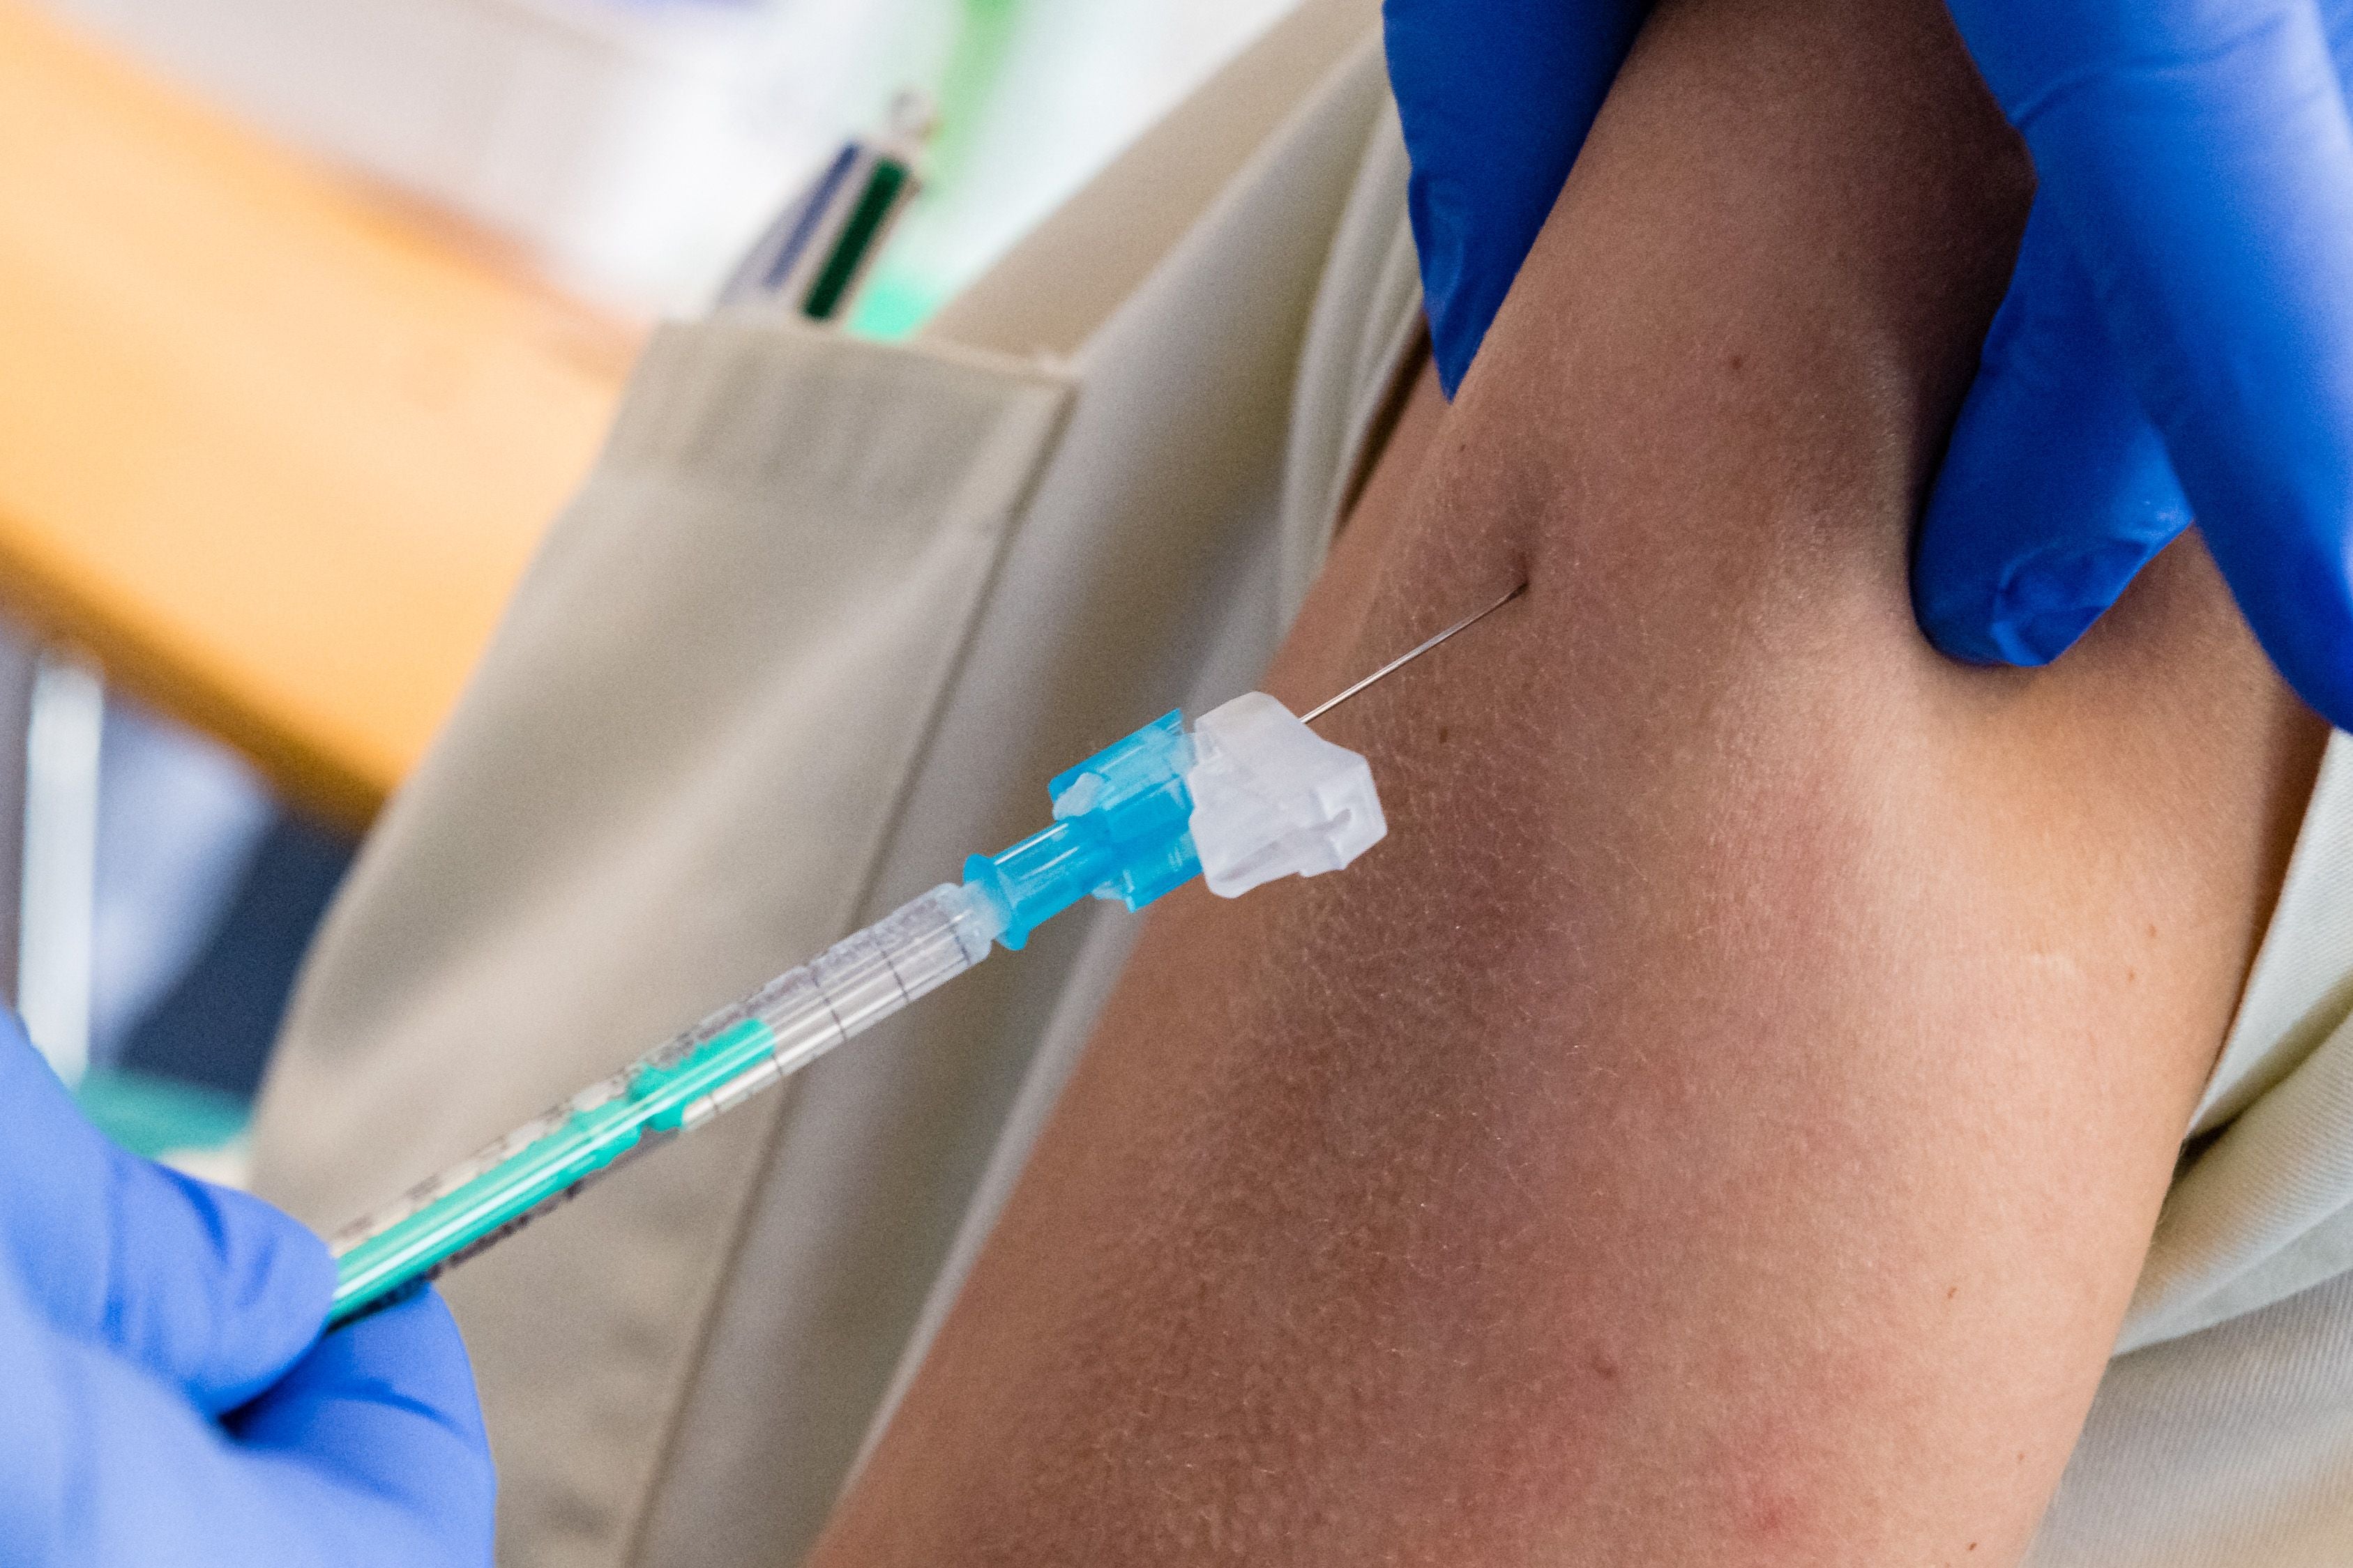 Healthcare worker receives AstraZeneca vaccine